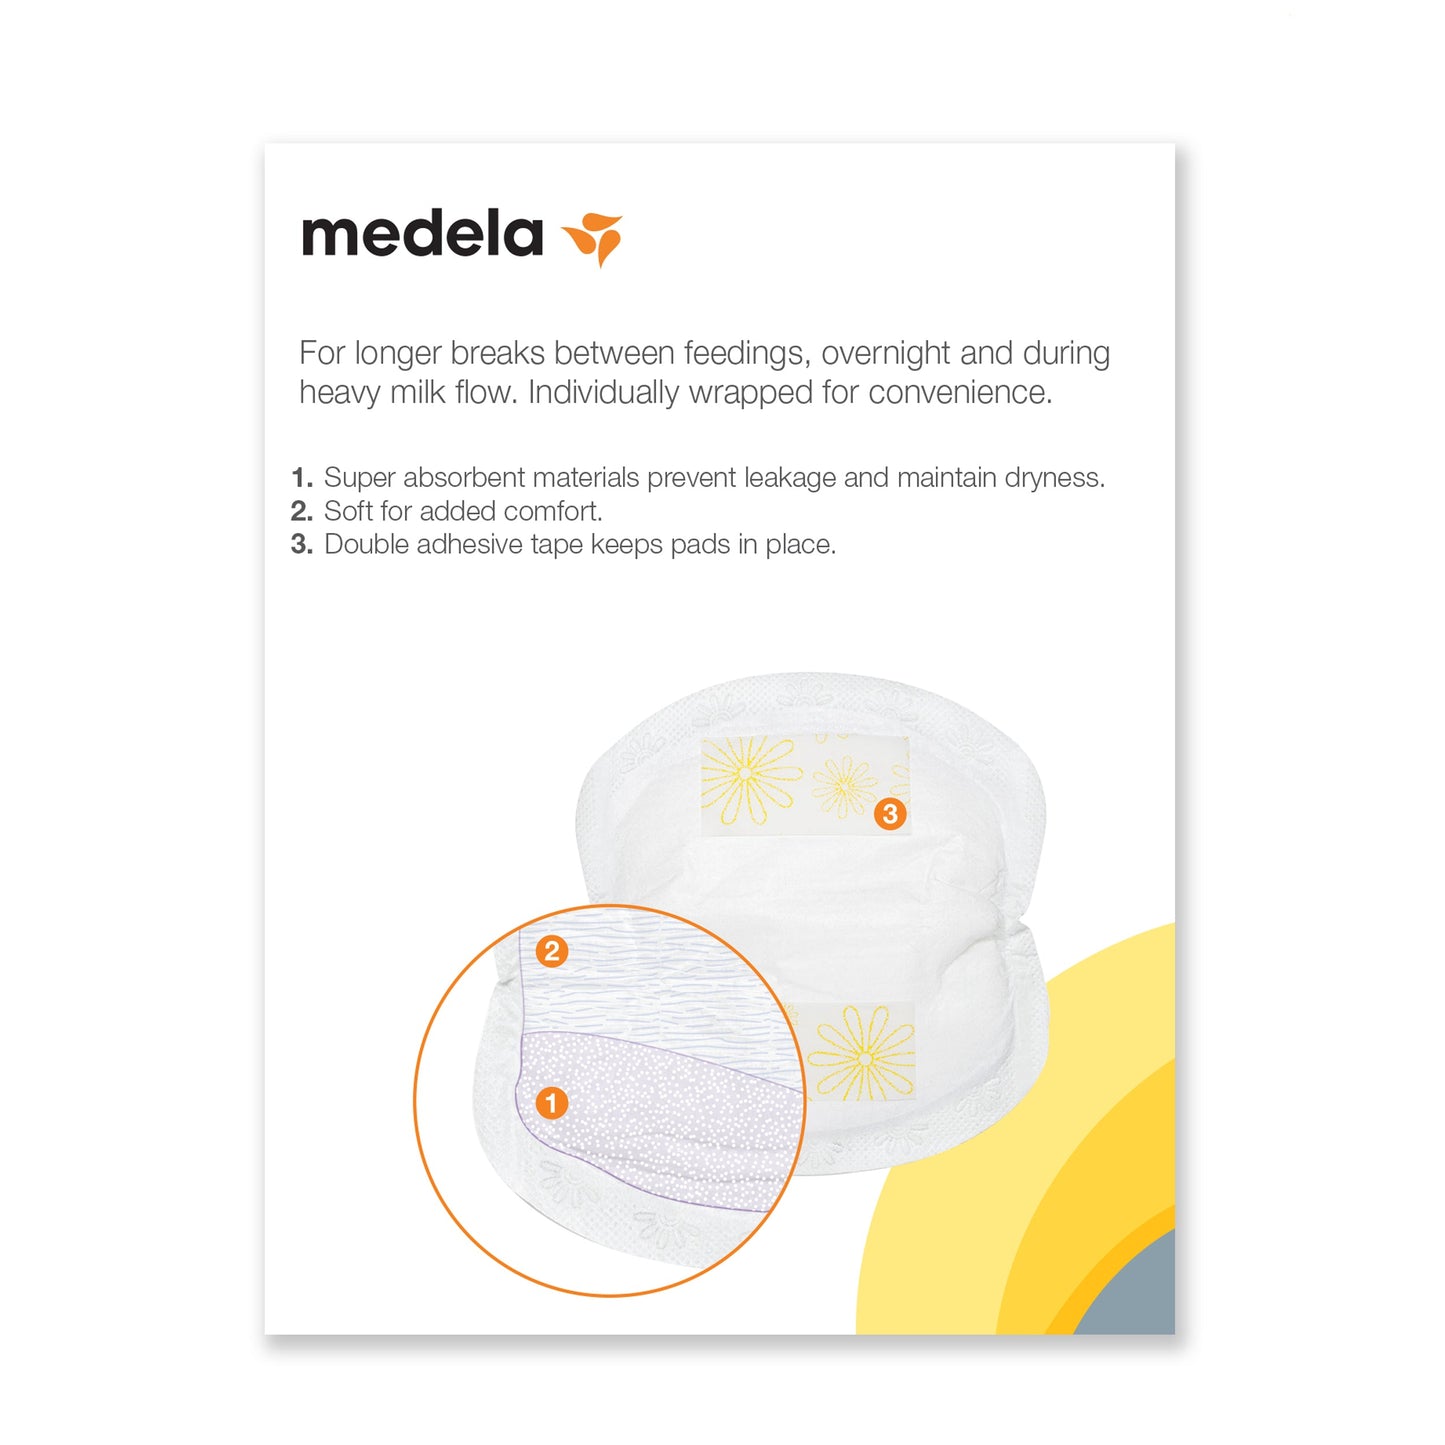 Medela Super Absorbent Disposable Nursing Pads, 60 Count